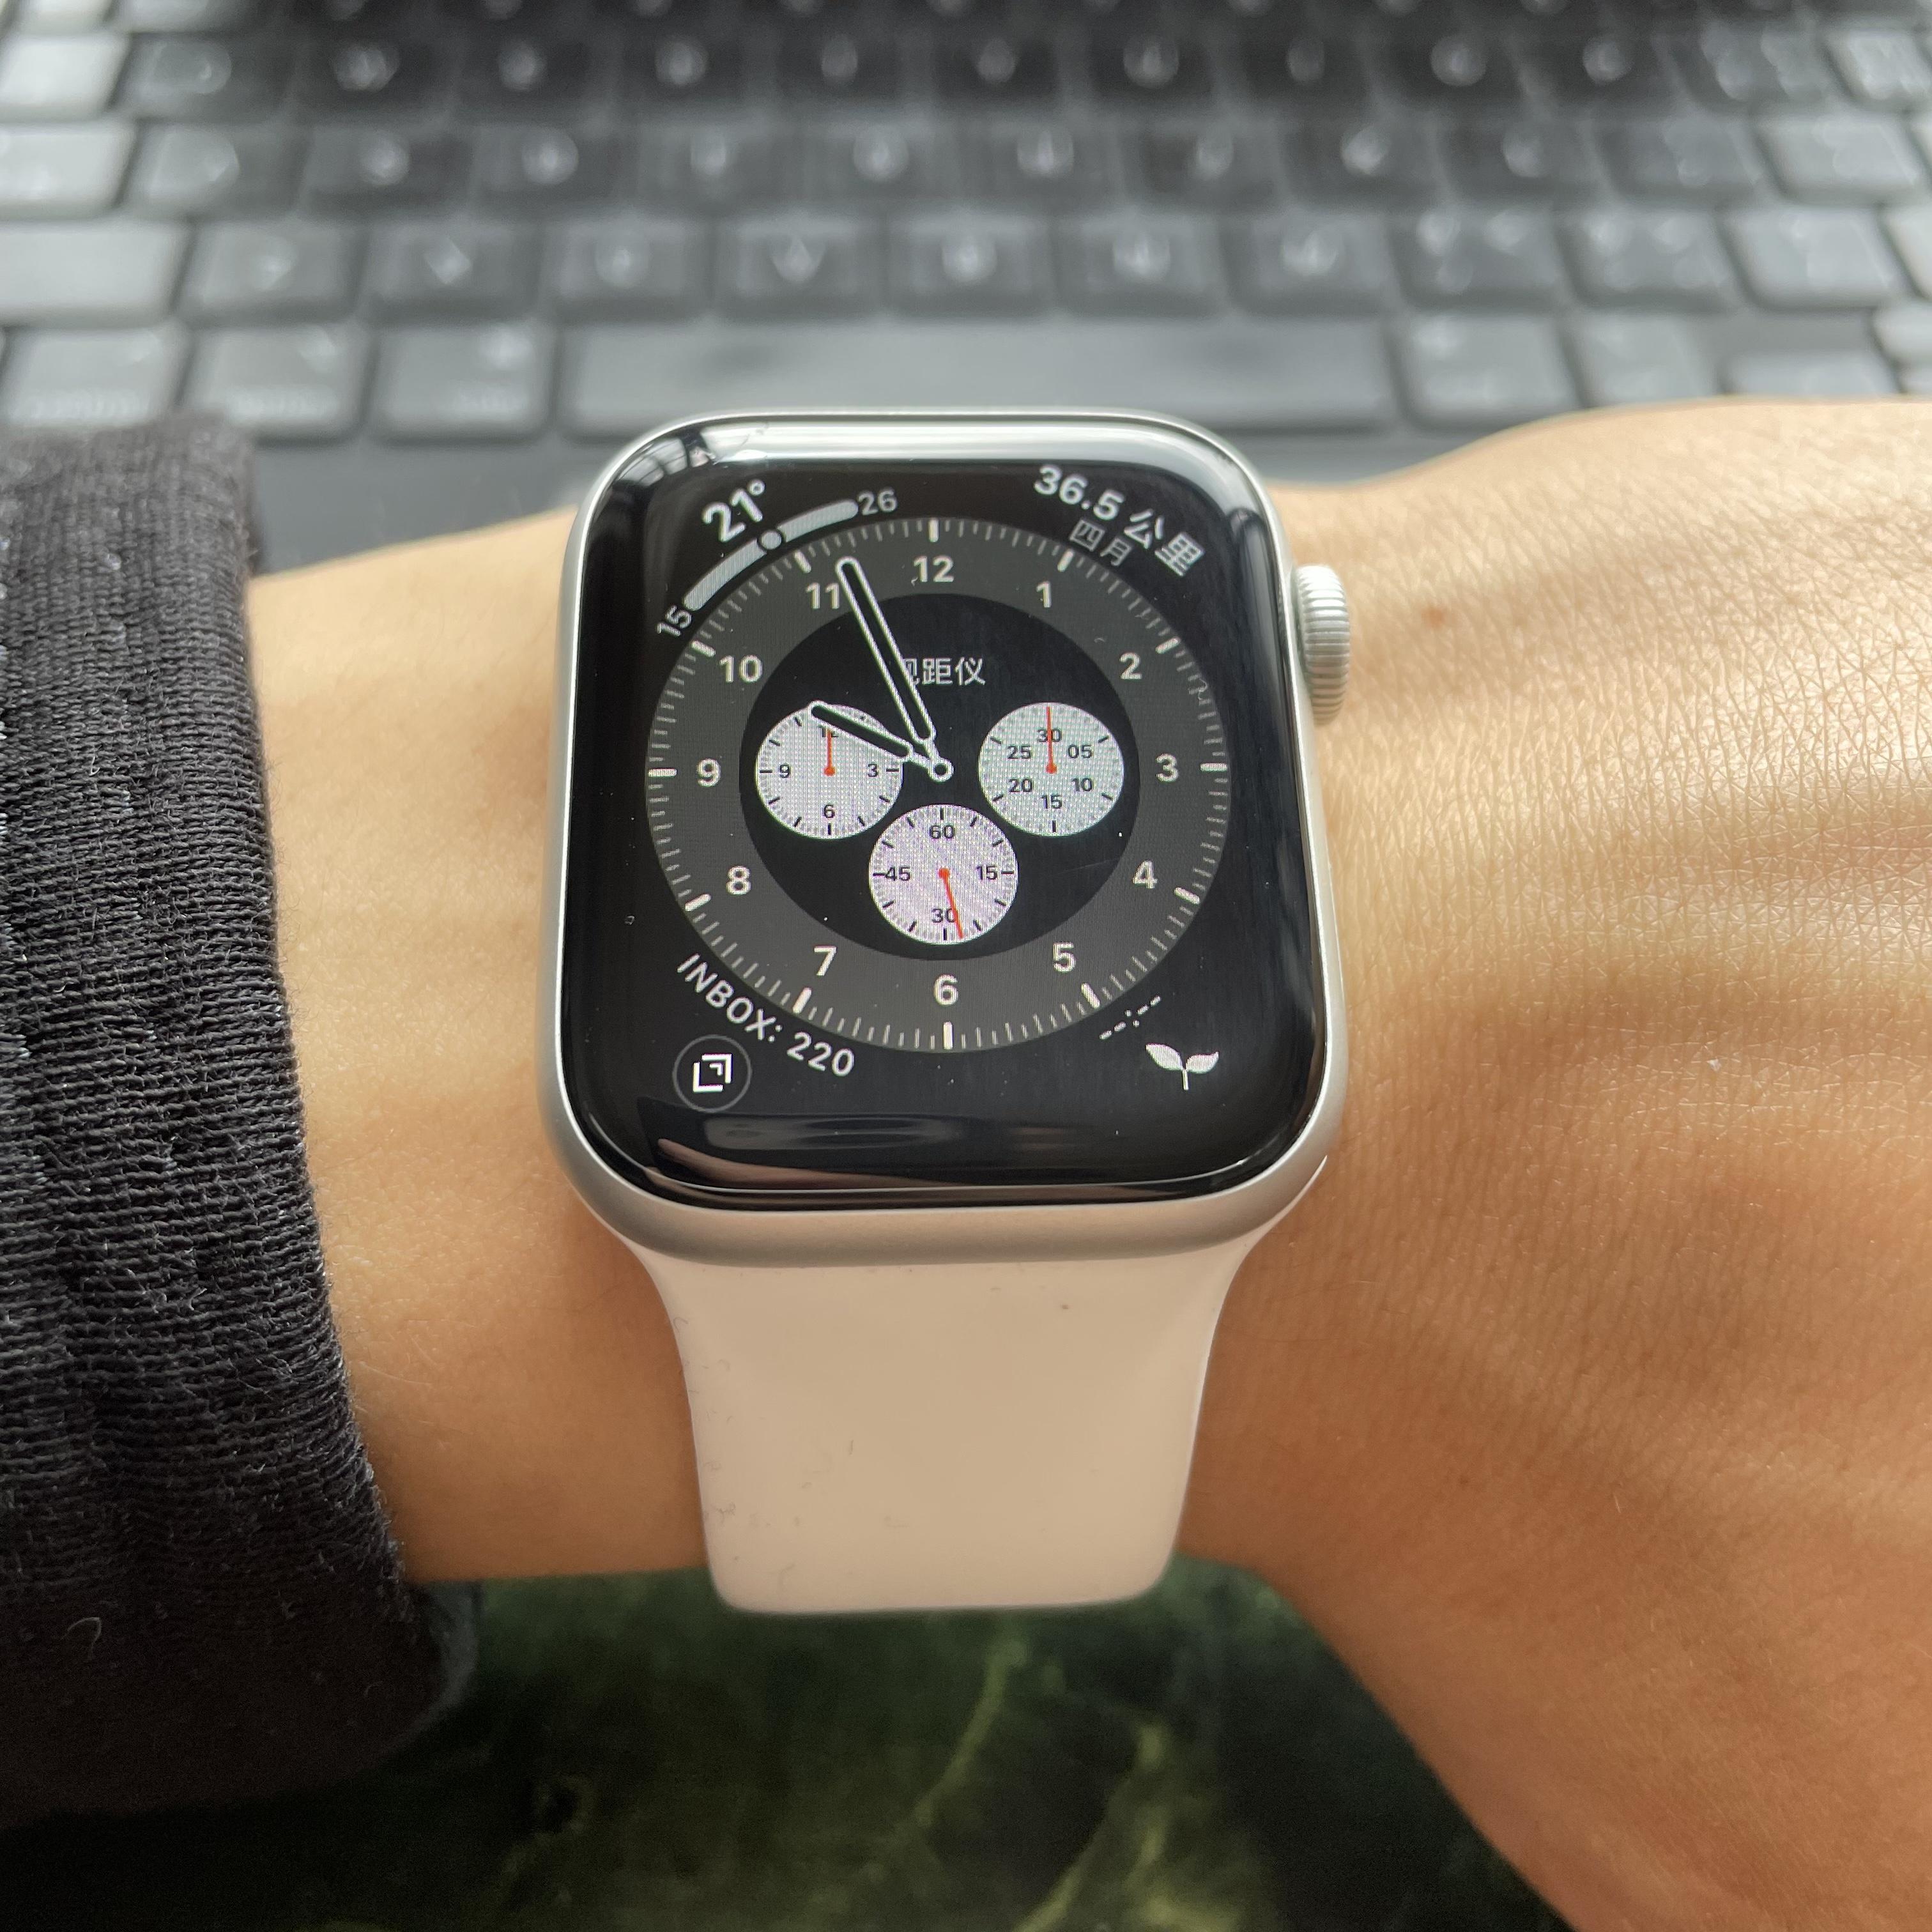 2、 Apple Watch 是什么意思？ 